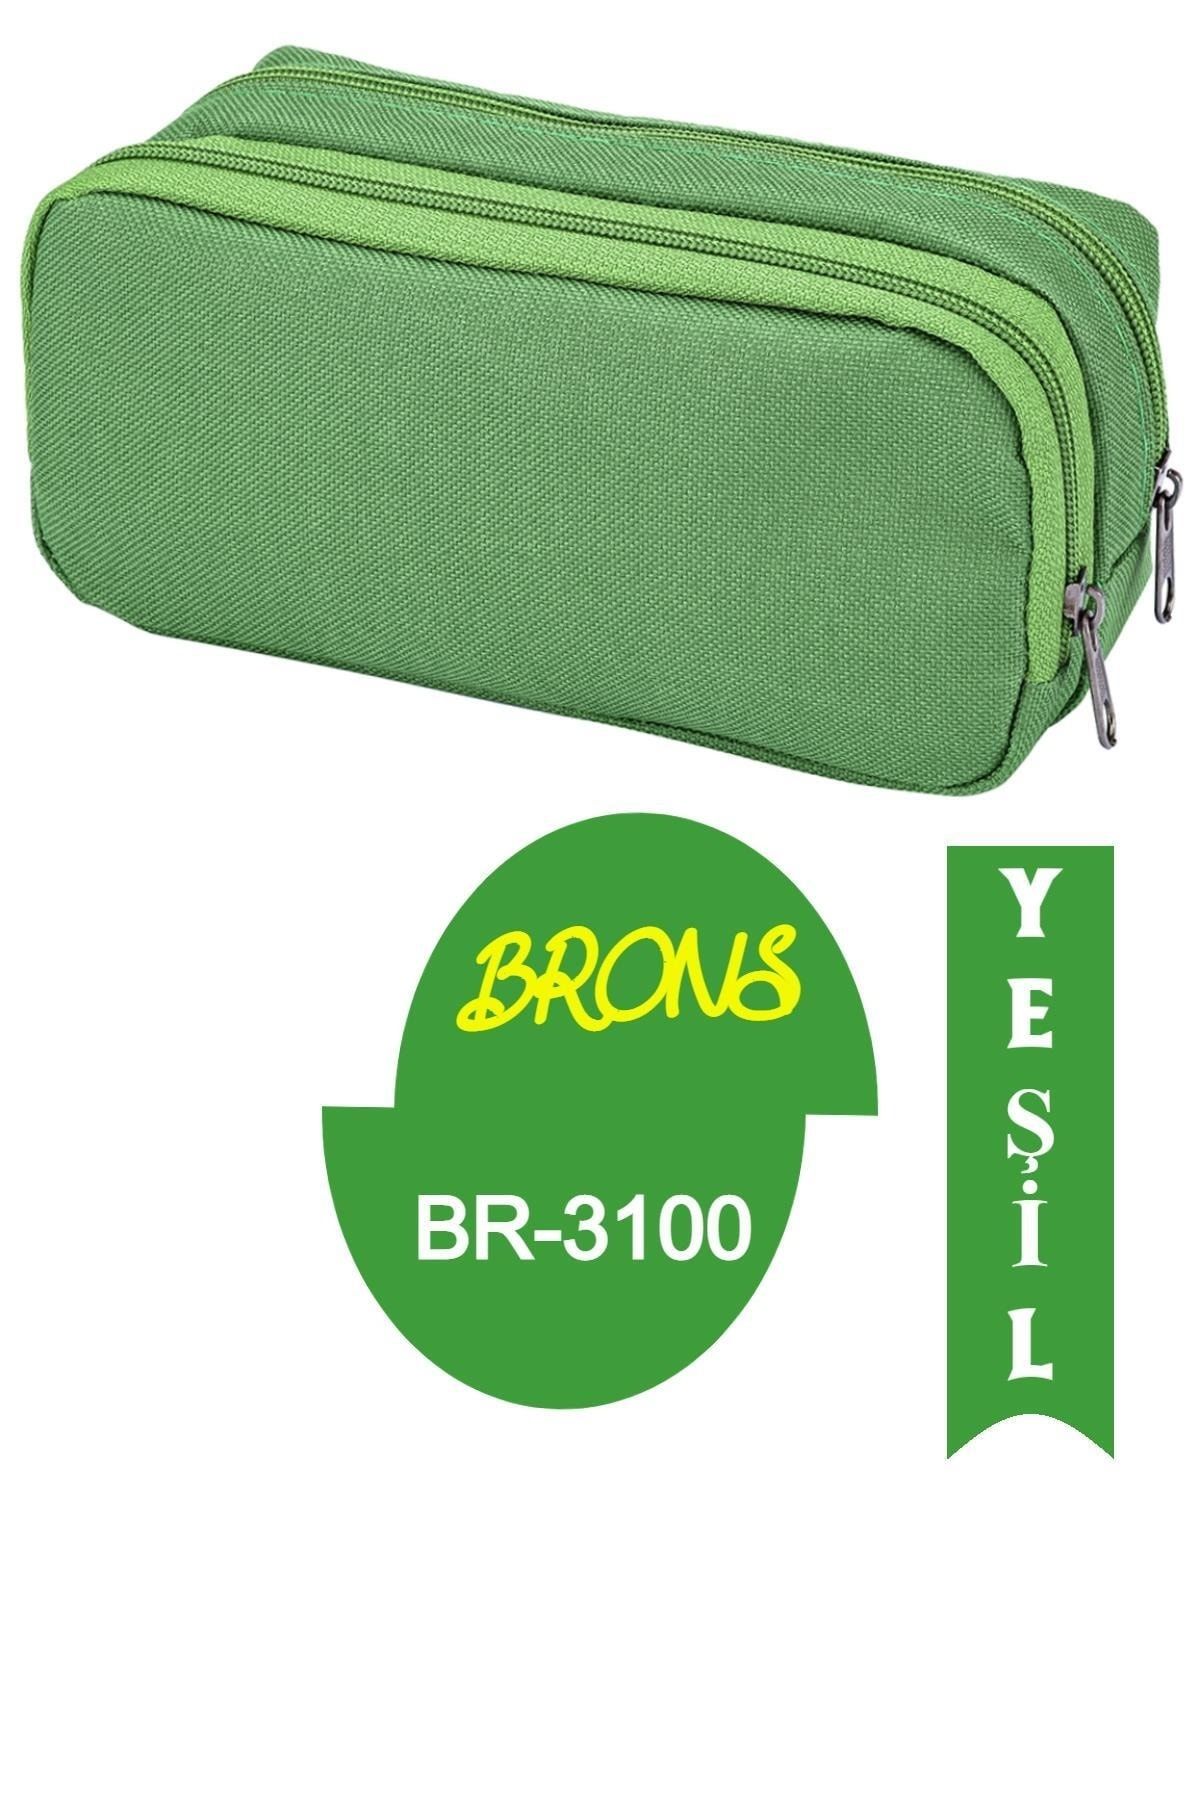 Brons Çift Bölmeli Iki Gözlü Kalemlik Yeşil Br-3100